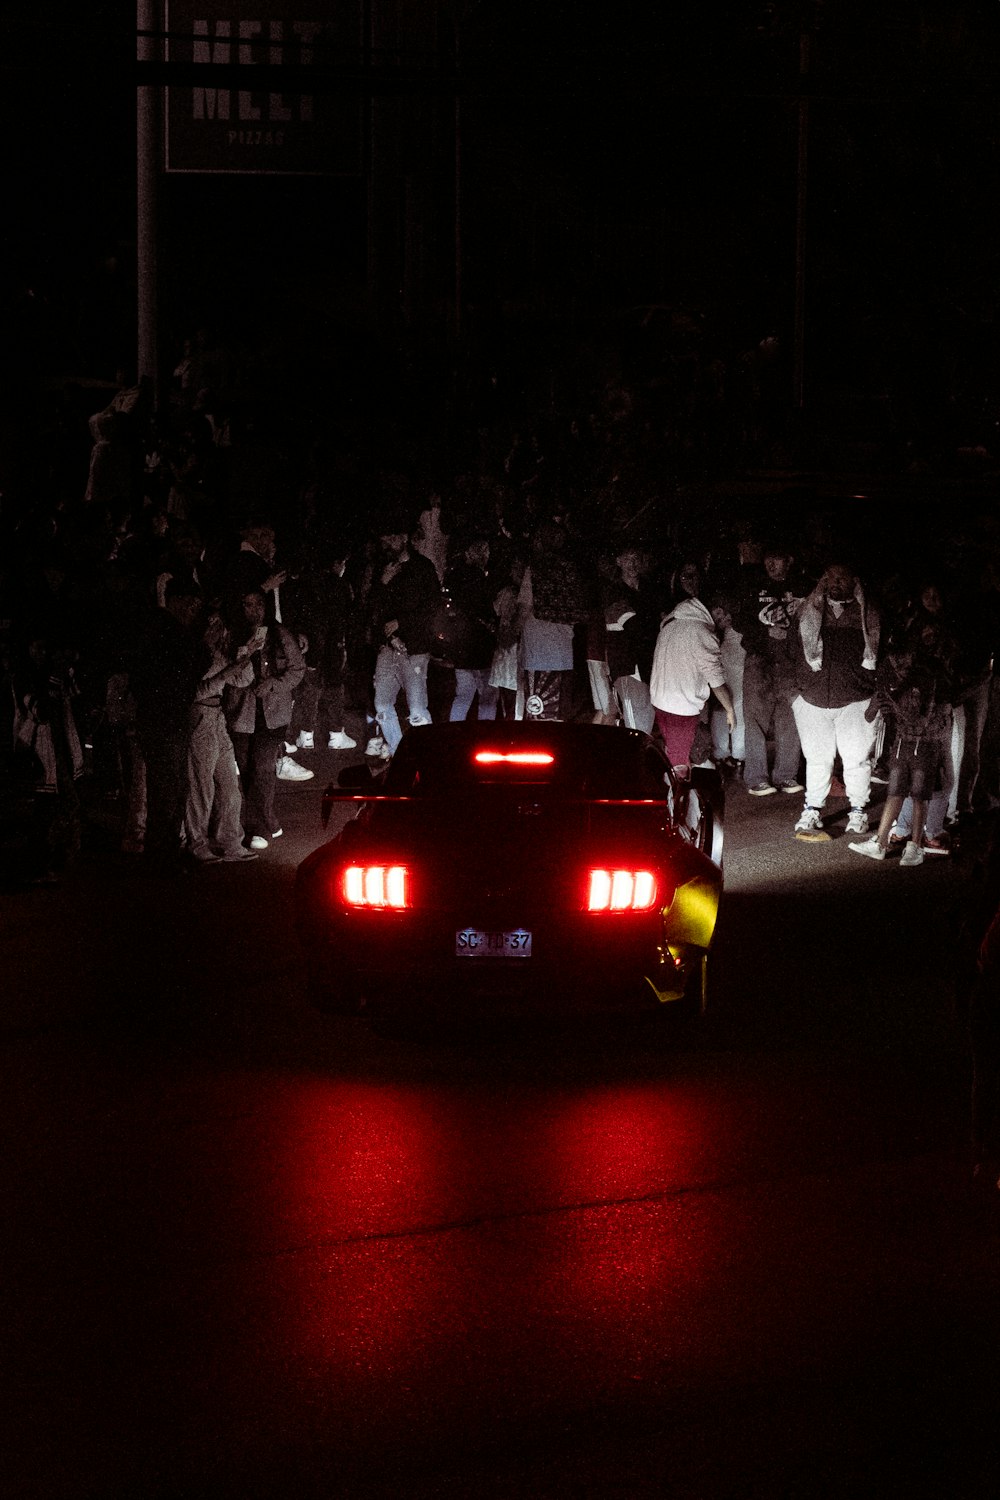 Un coche rojo circulando por una calle de noche